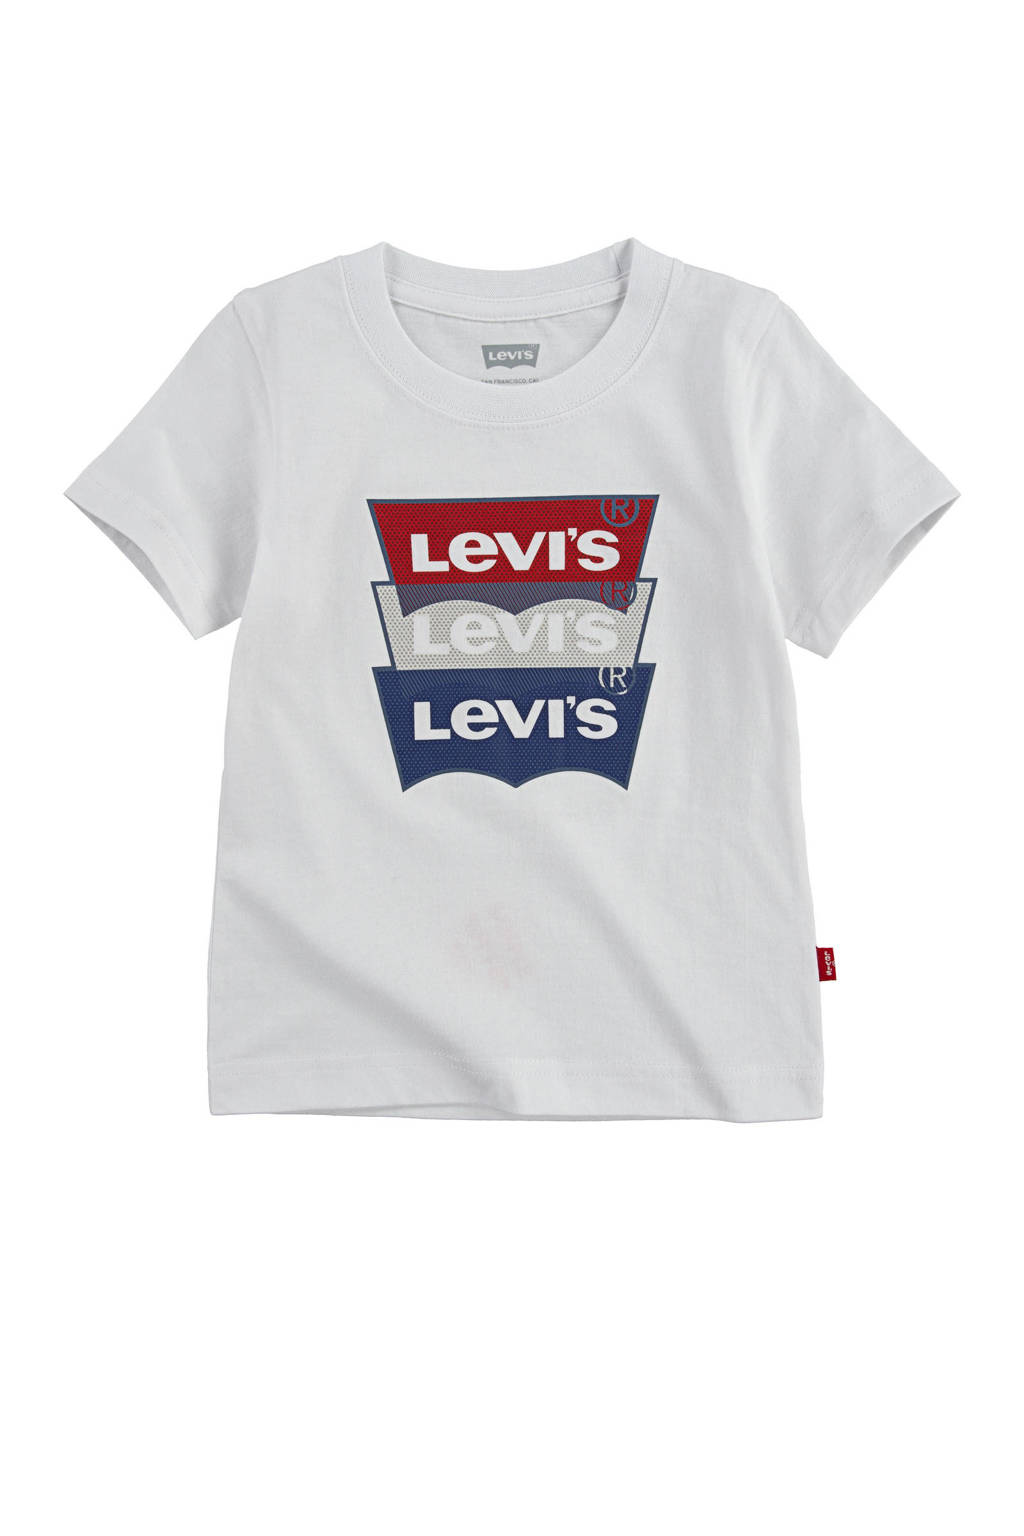 steeg Wijde selectie Hen Levi's Kids T-shirt met logo wit/rood/blauw | wehkamp